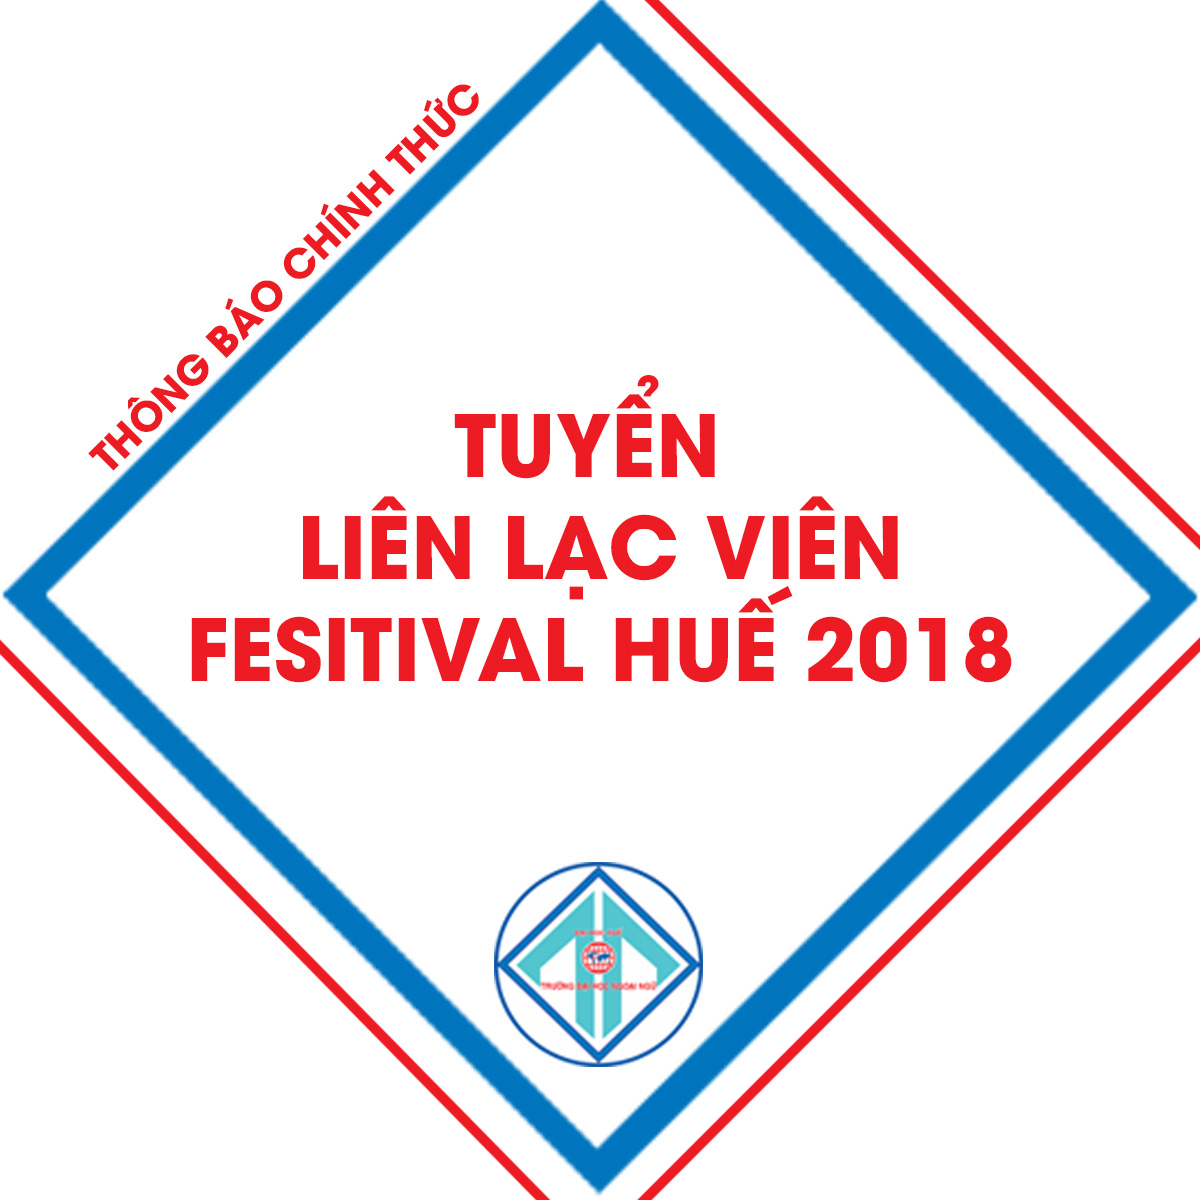 tuyen-lien-lac-vien-festival-hue-2018